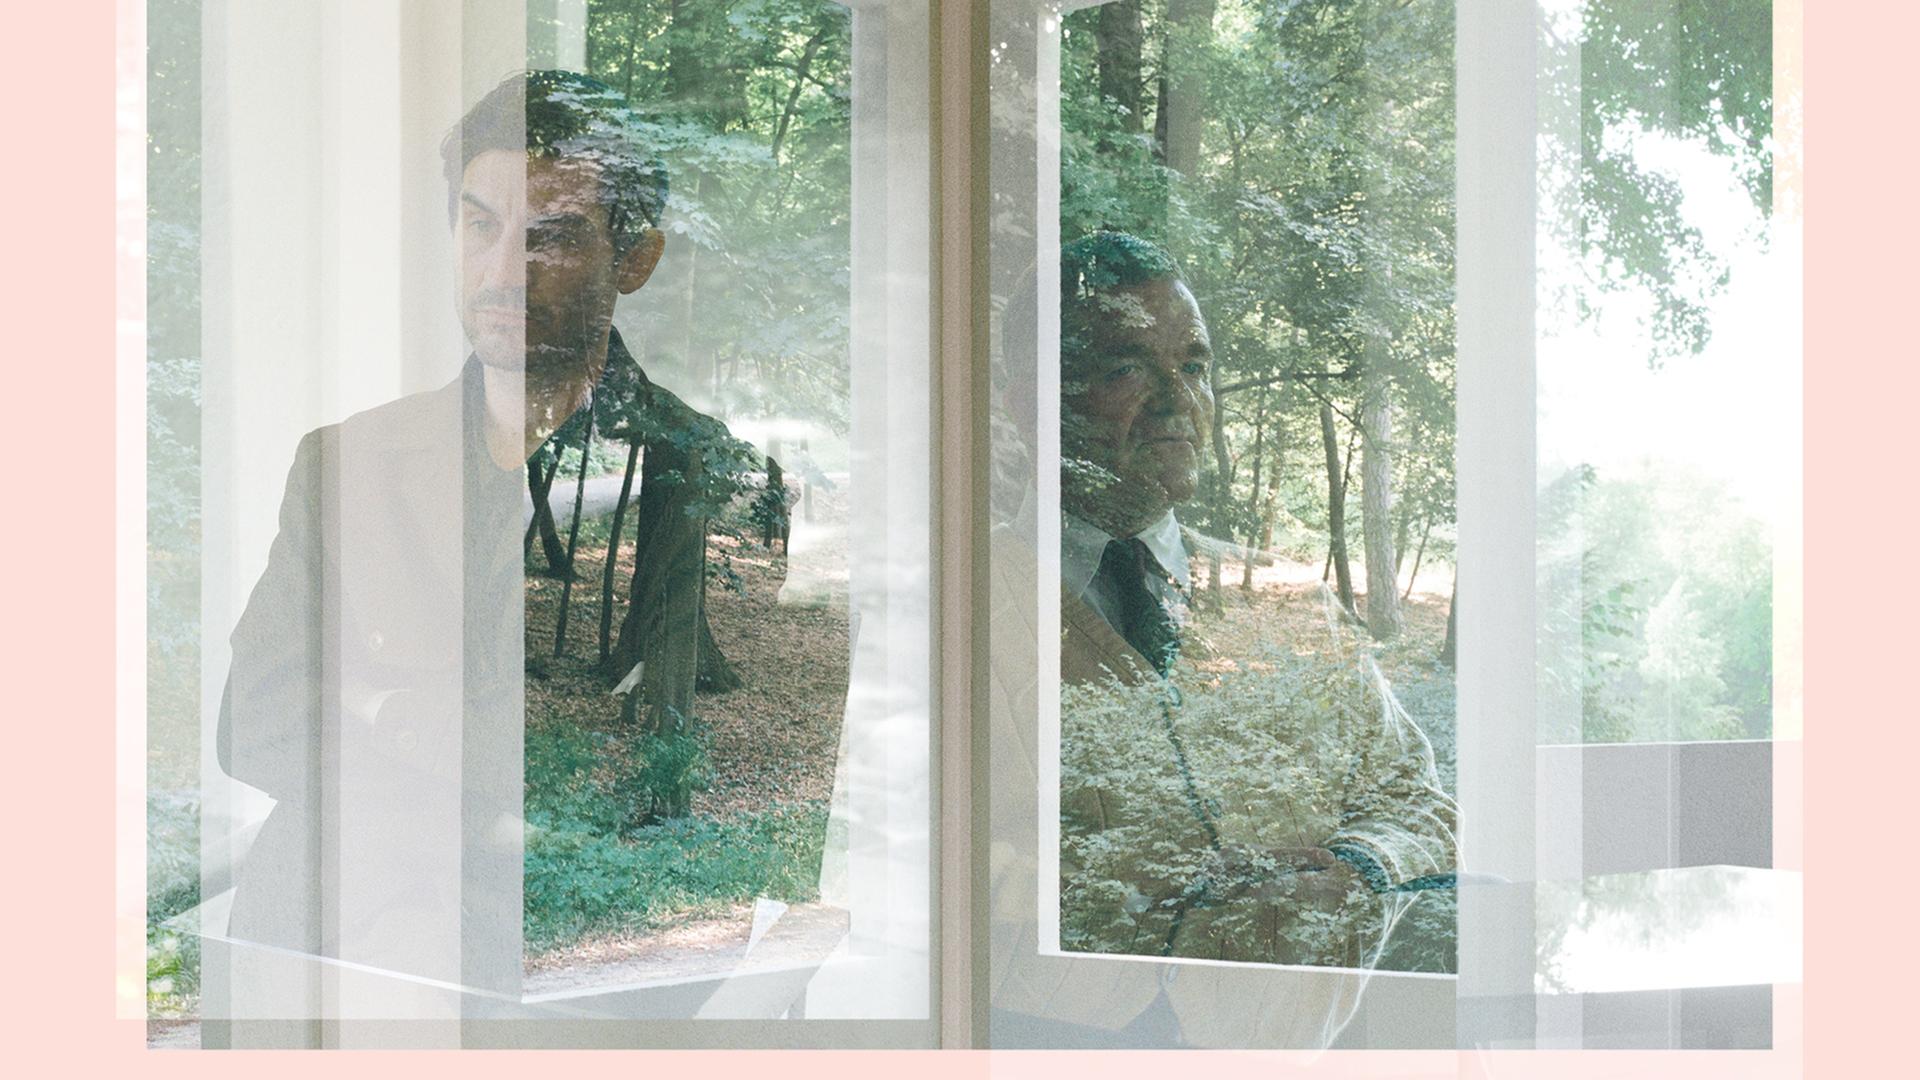 Filmstill aus "De Facto" von Selma Doborac. Ein jüngerer und ein älterer Mann spiegel sich in den Scheiben eines Eckfensters.